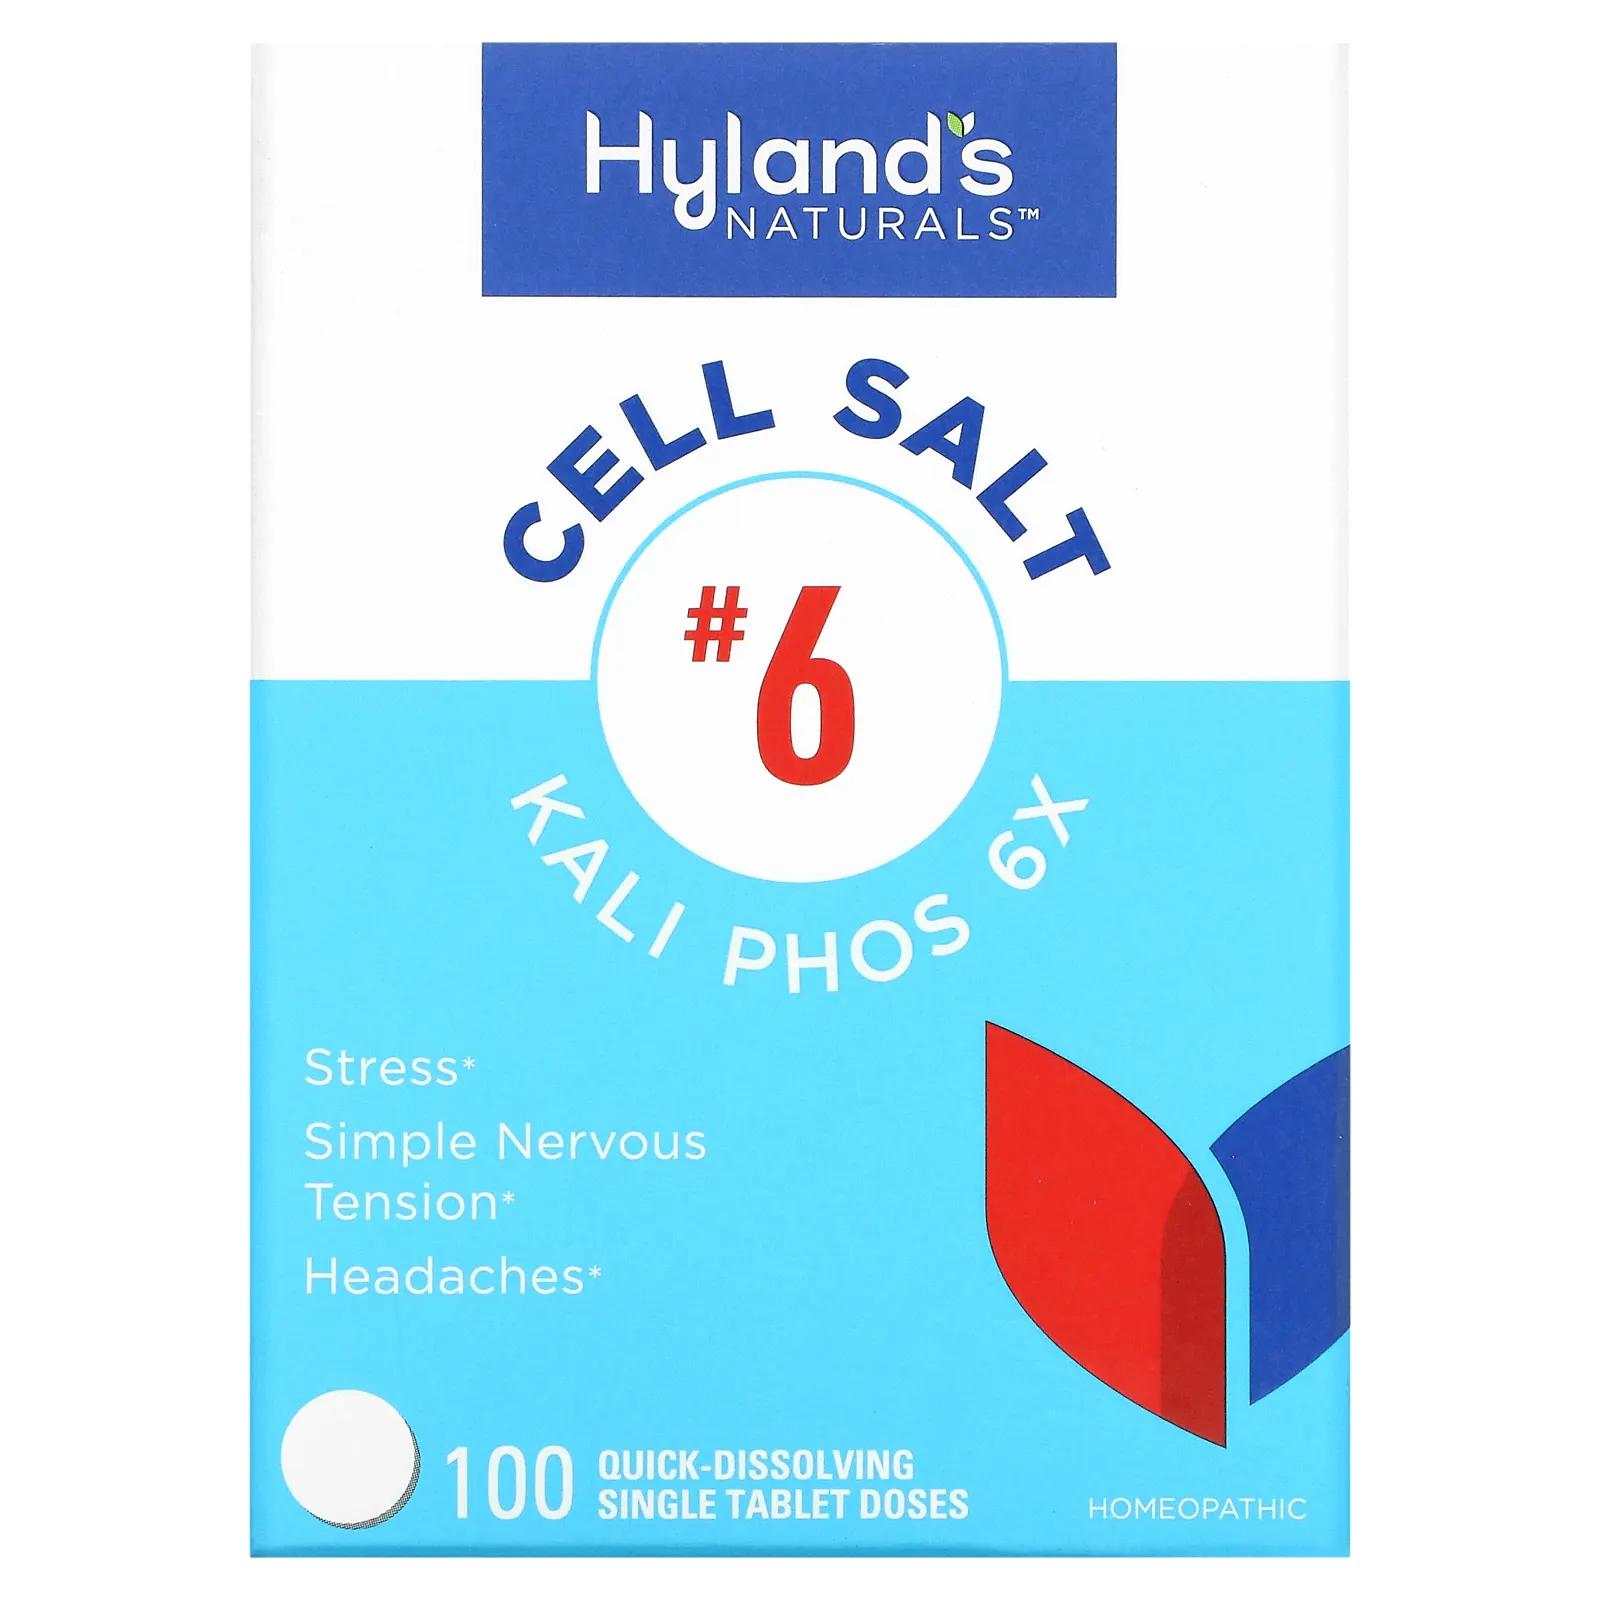 Hyland's Naturals Клеточная соль №6 Kali Phosphoricum 6X 100 таблеток клеточная соль 6 калий фосфат 6x hyland s 100 быстрорастворимых таблеток